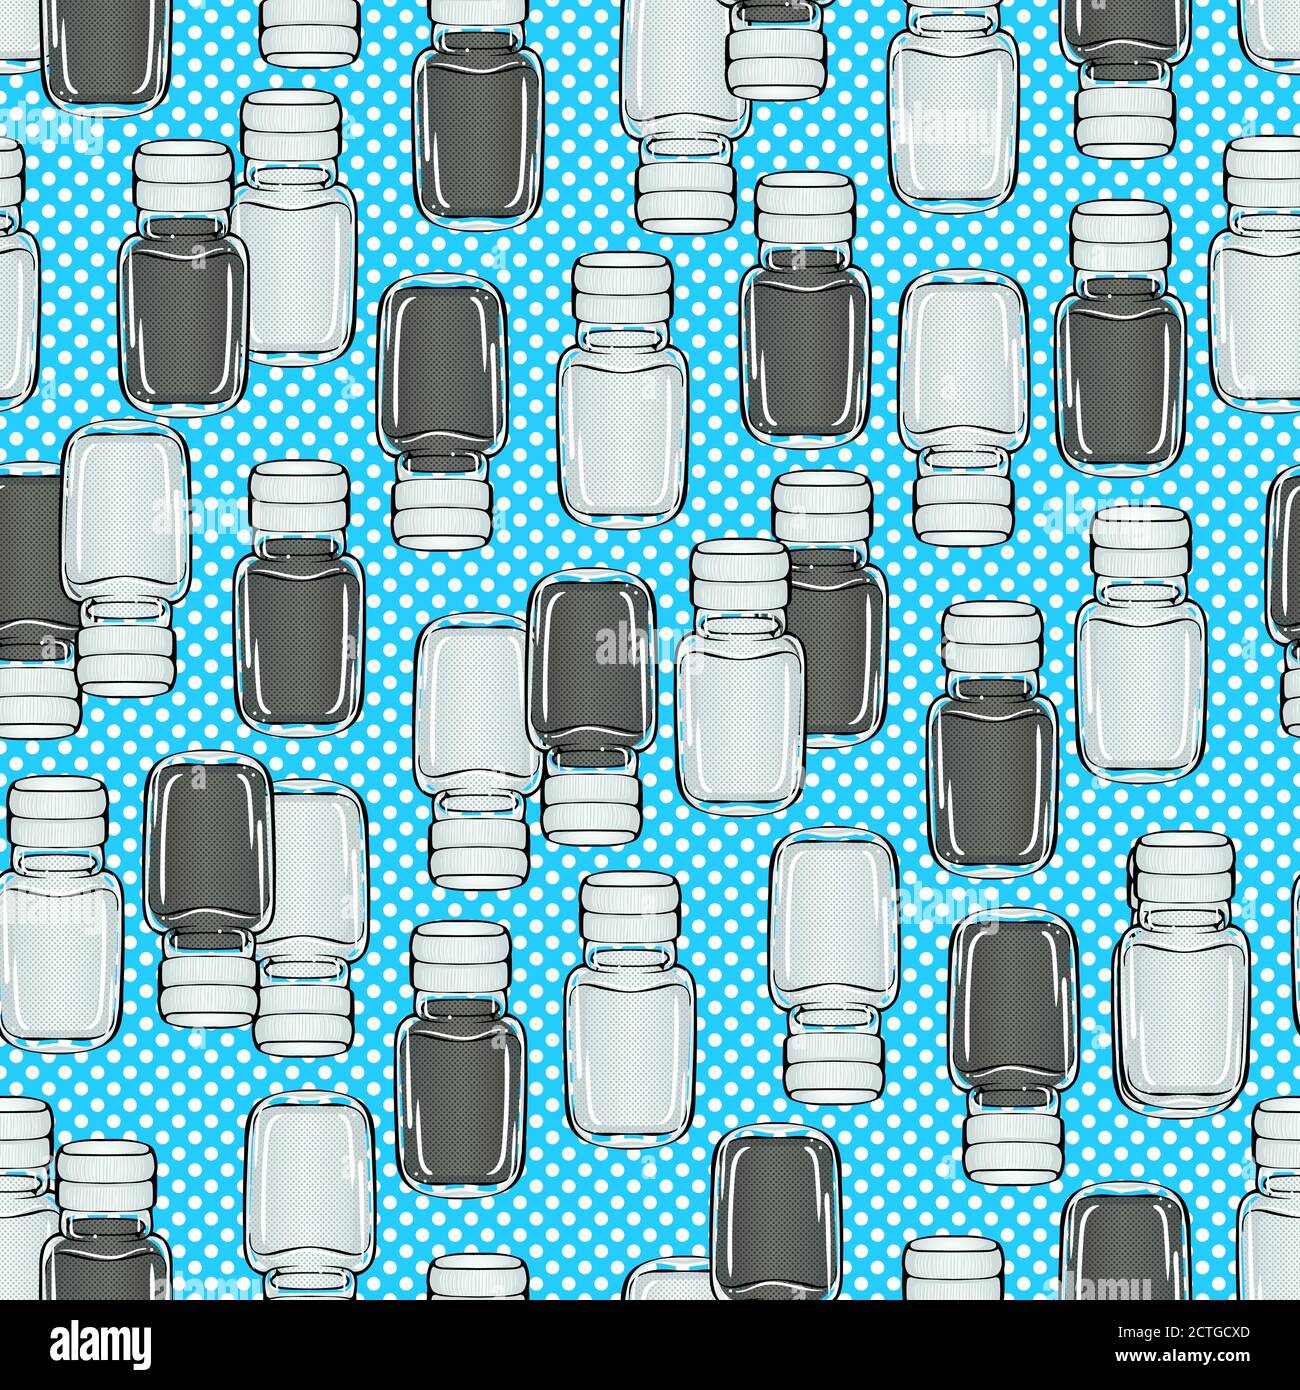 Cartoon bunte helle Salz Shaker und Pfeffer Shaker auf blauem Hintergrund nahtlose Muster. Vektor-Illustration in Pop-Art-Stil Textur für Restaurant oder Café Menü Banner, Textil, Geschenkpapier Stock Vektor